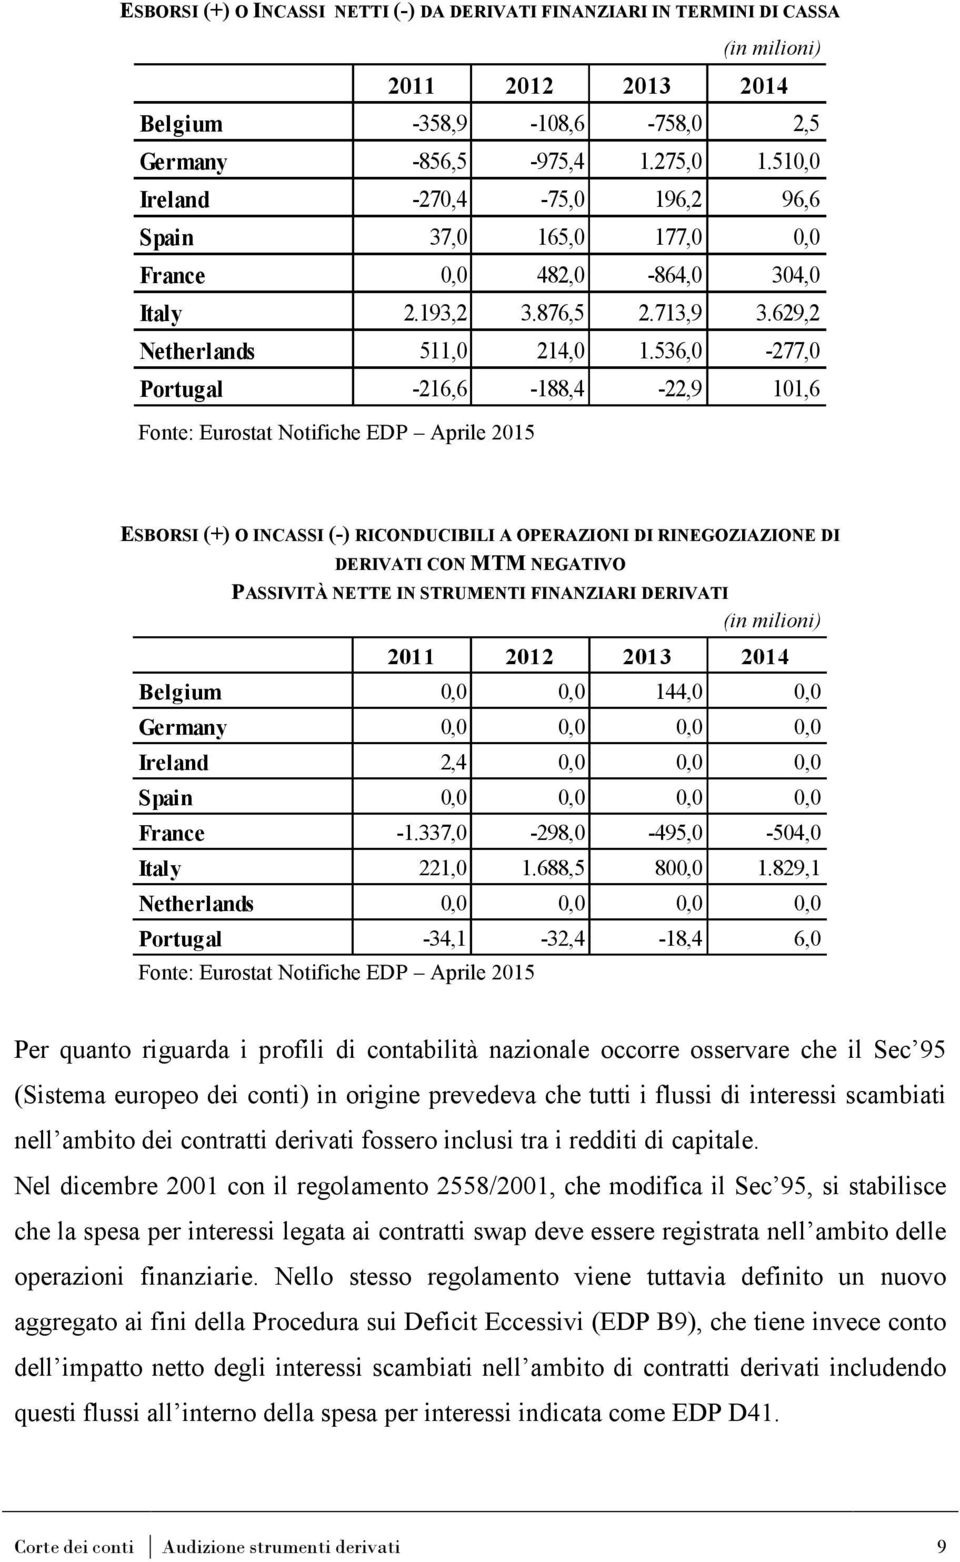 536,0-277,0 Portugal -216,6-188,4-22,9 101,6 Fonte: Eurostat Notifiche EDP Aprile 2015 ESBORSI (+) O INCASSI (-) RICONDUCIBILI A OPERAZIONI DI RINEGOZIAZIONE DI DERIVATI CON MTM NEGATIVO PASSIVITÀ